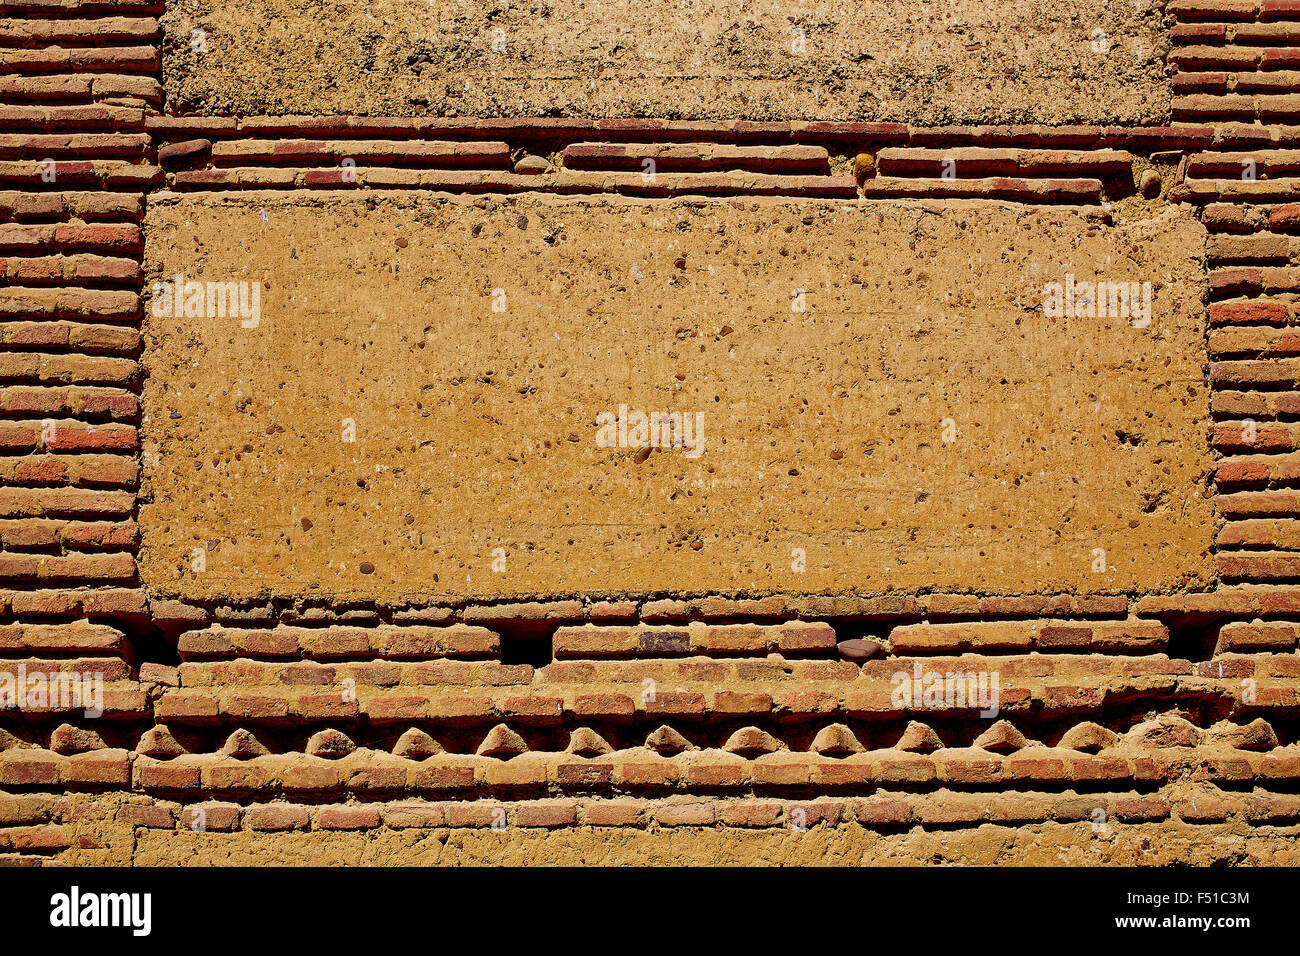 The way of saint James adobe mud walls at Palencia Spain Stock Photo